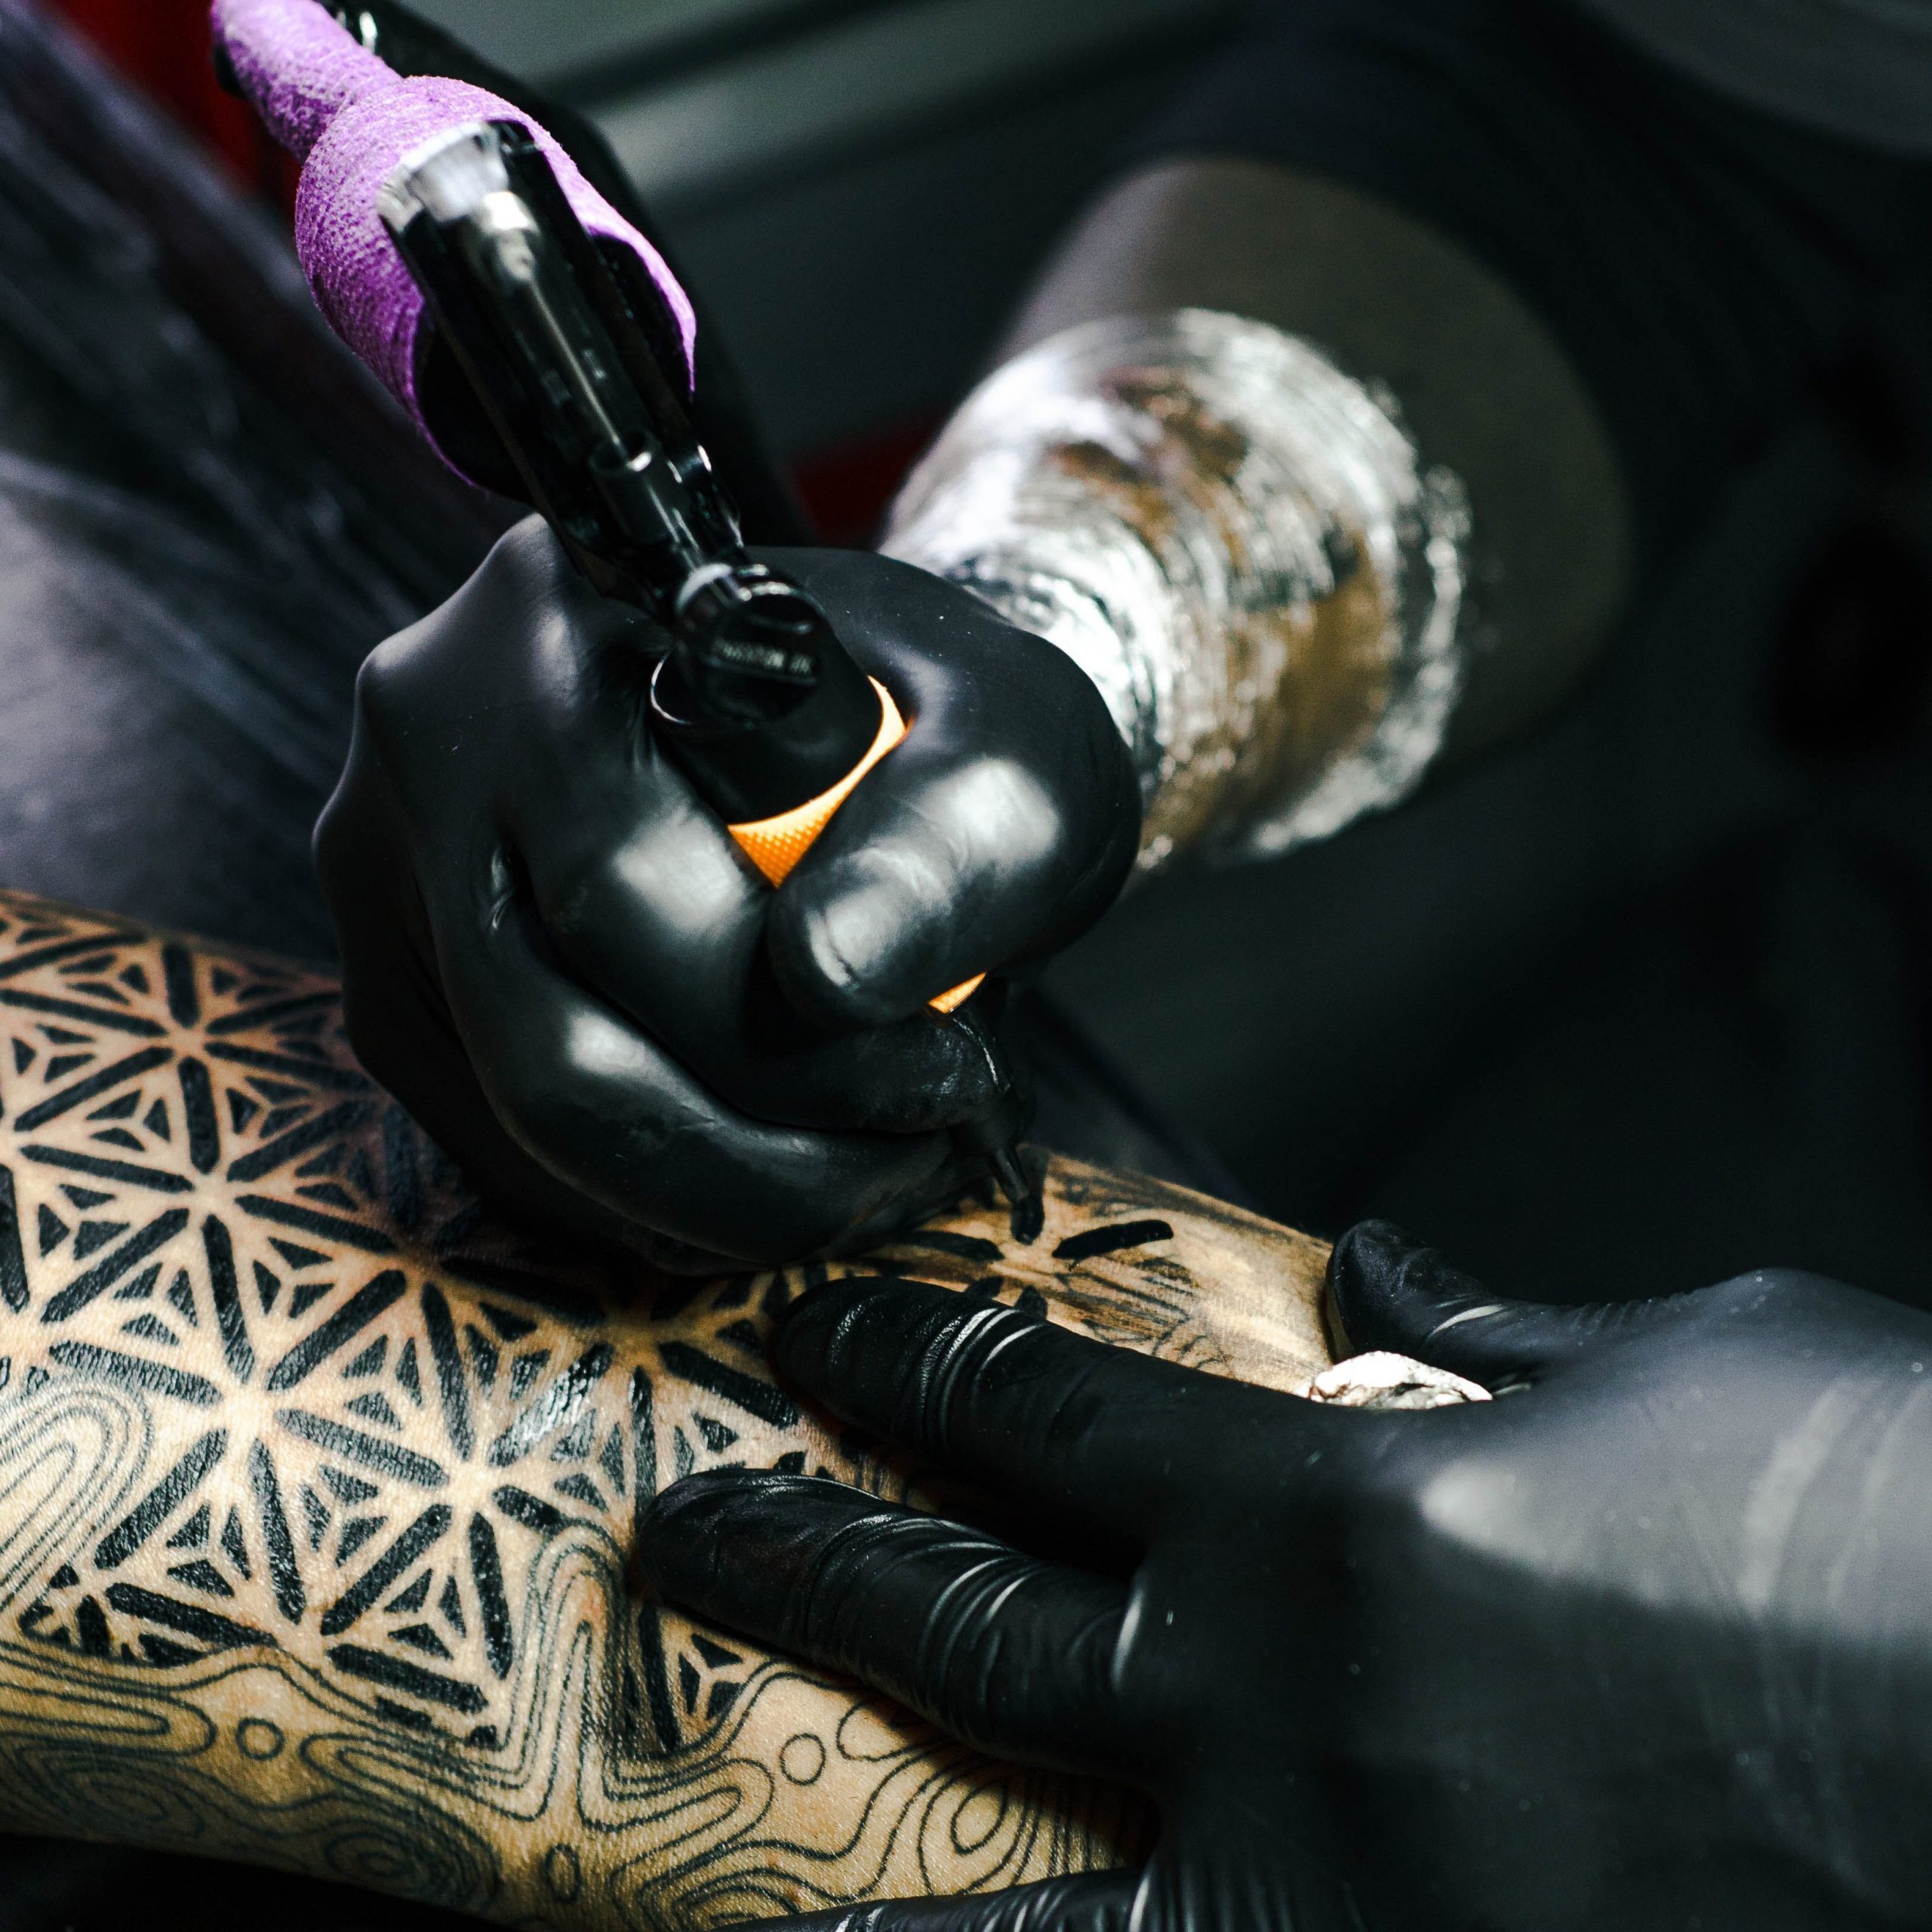 Vue d'un avant-bras tatoué avec des traits noirs par deux mains gantées de noir